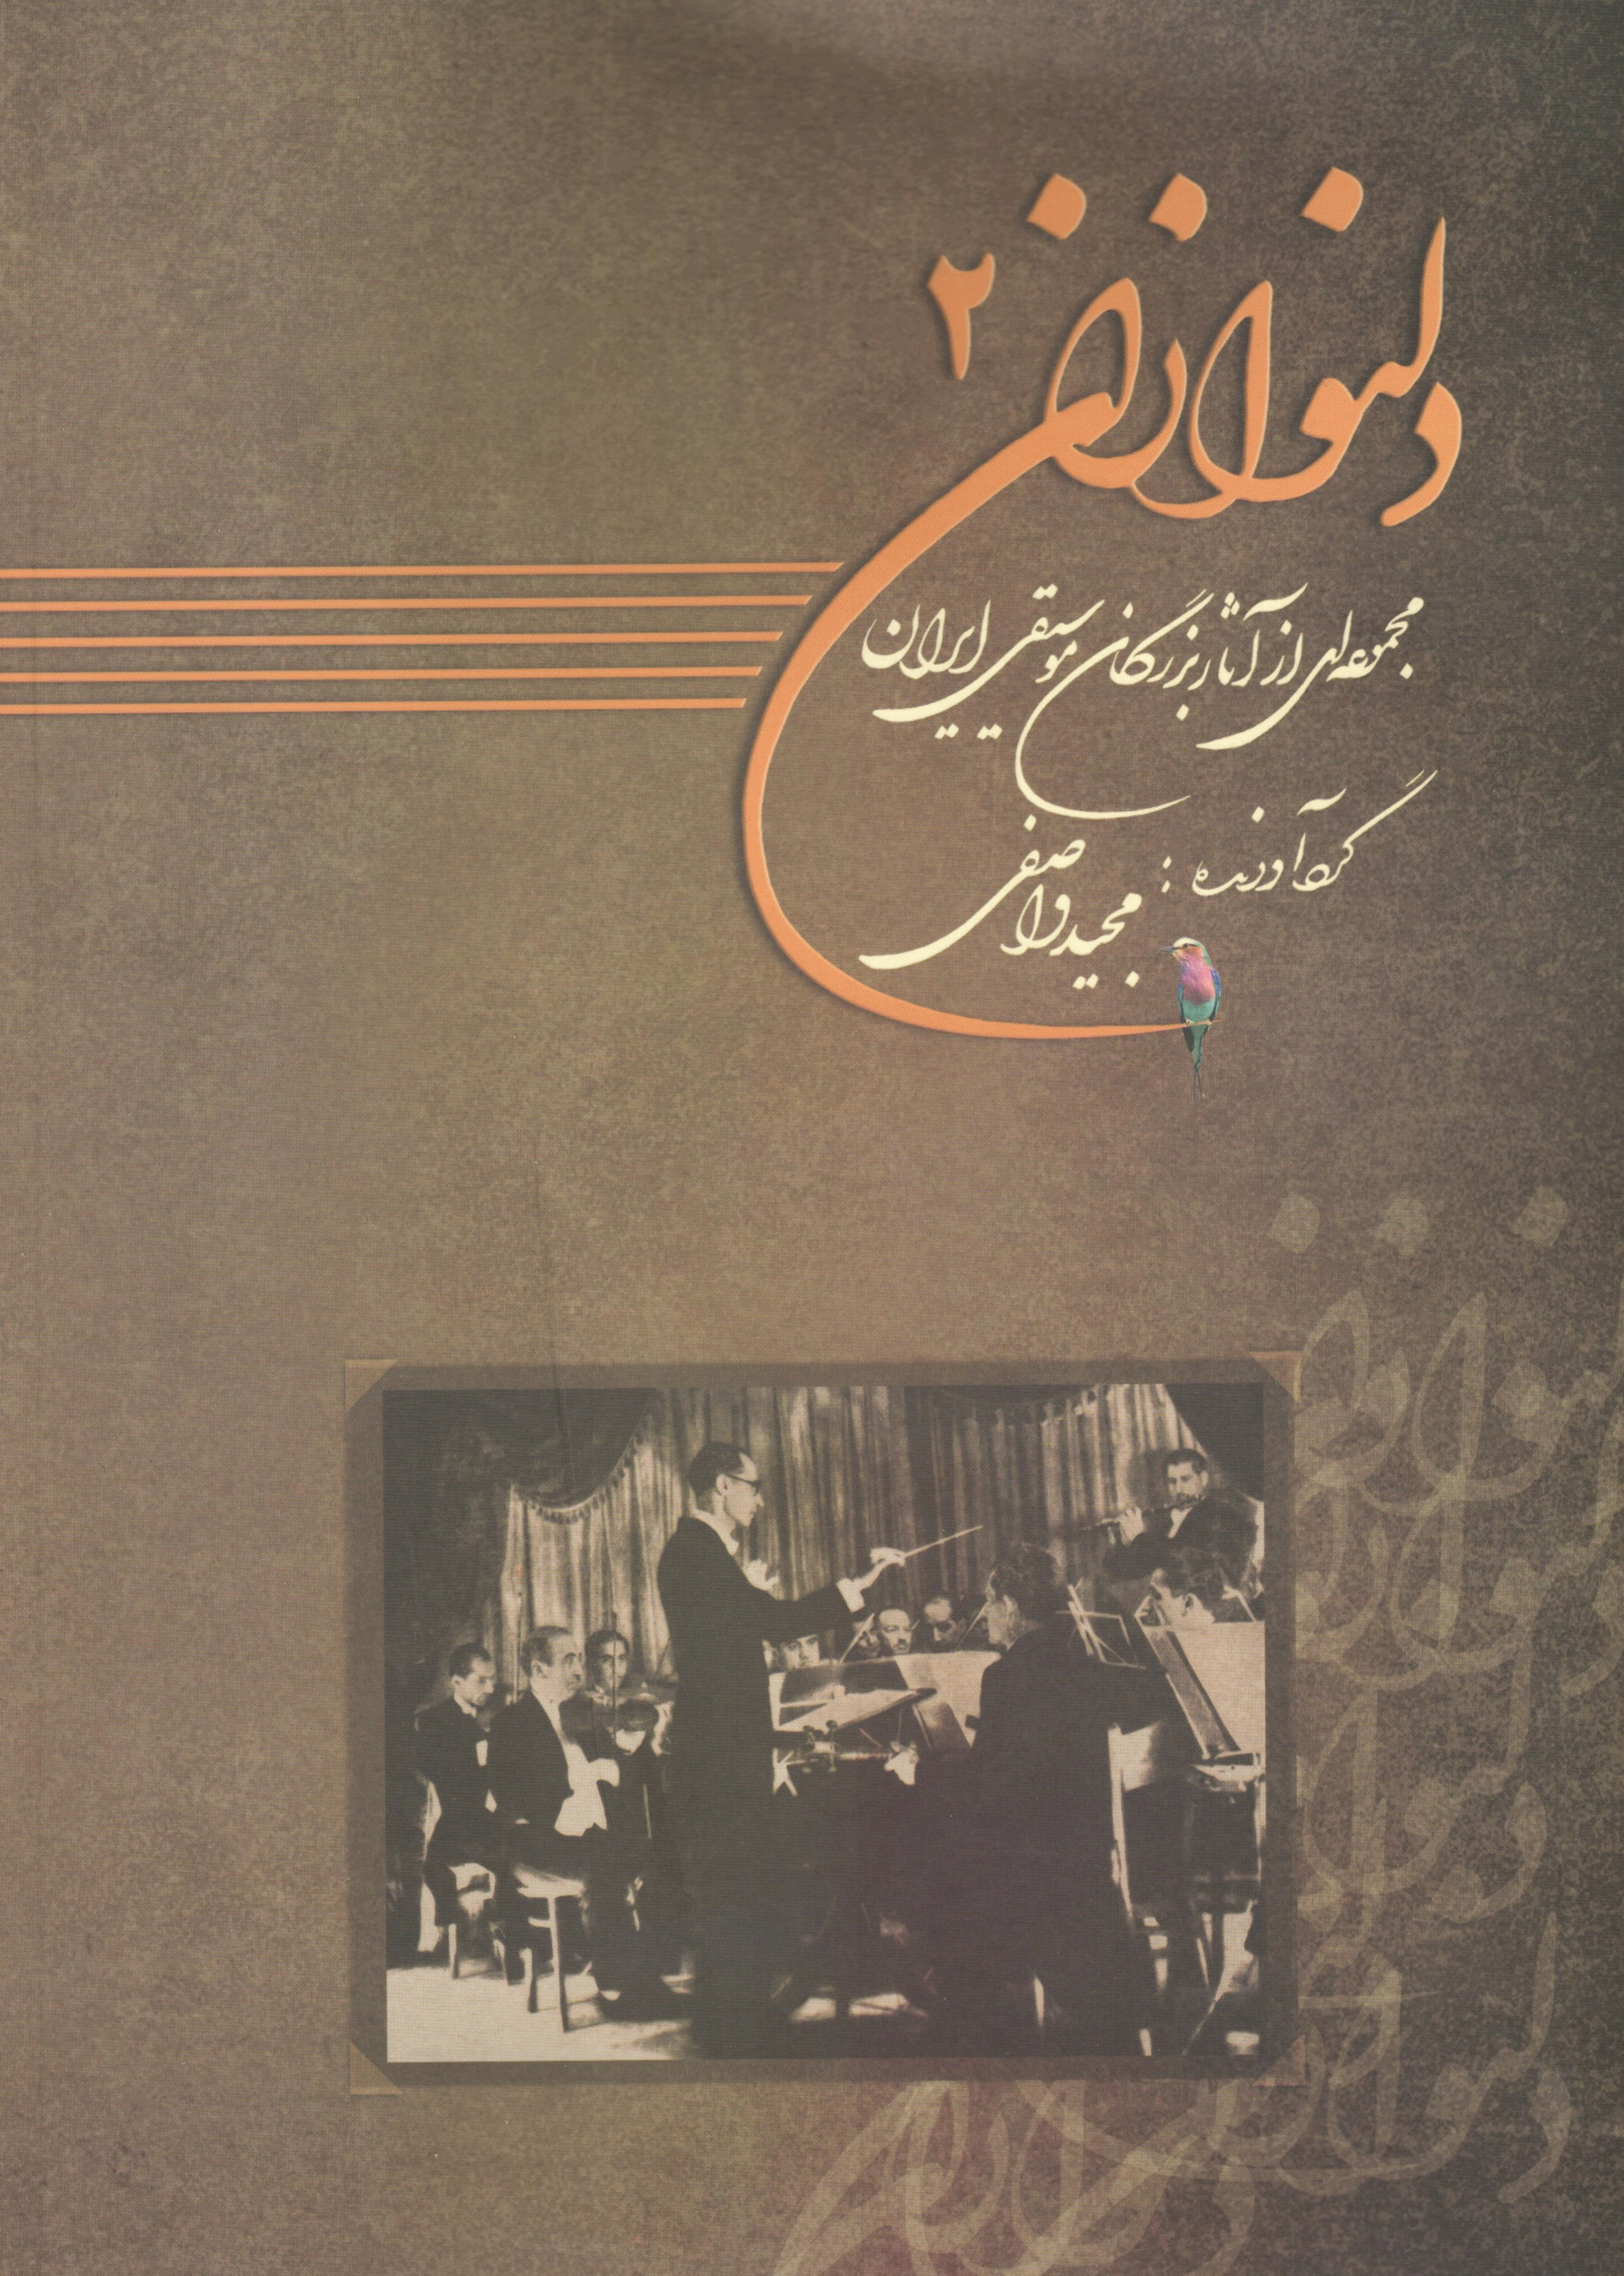 دلنوازان ۲ (مجموعه آثار بزرگان موسیقی ایران)همراه با لوح فشرده / مجید واصفی